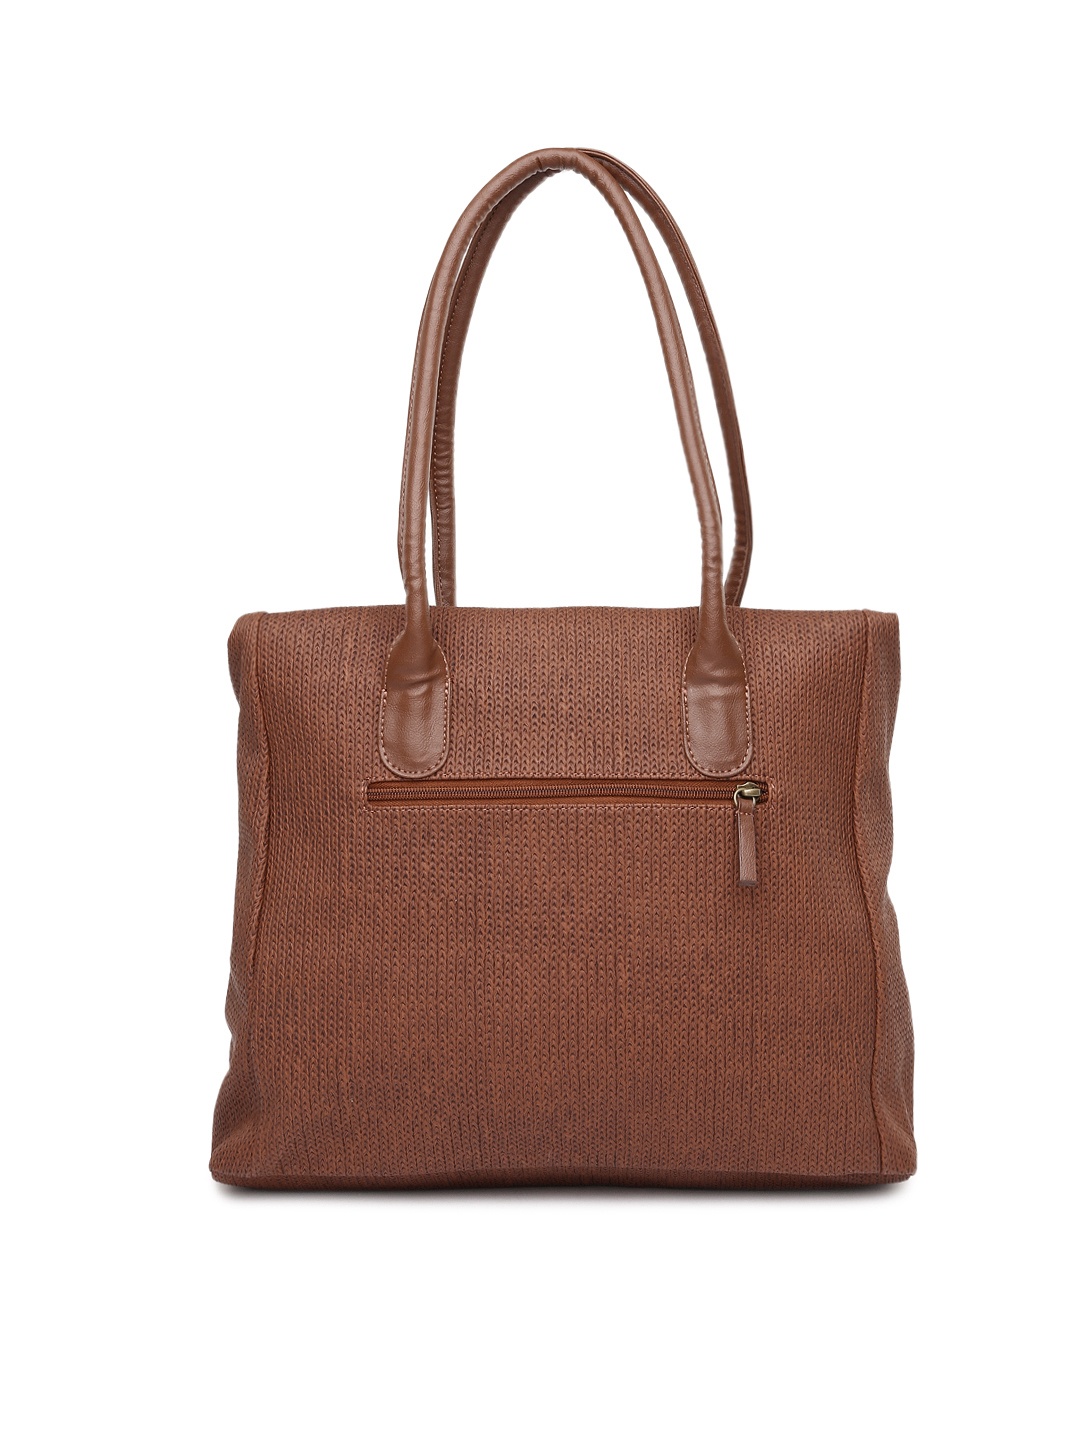 Myntra Baggit Brown Shoulder Bag 721138 | Buy Myntra Baggit Handbags at best price online. All ...